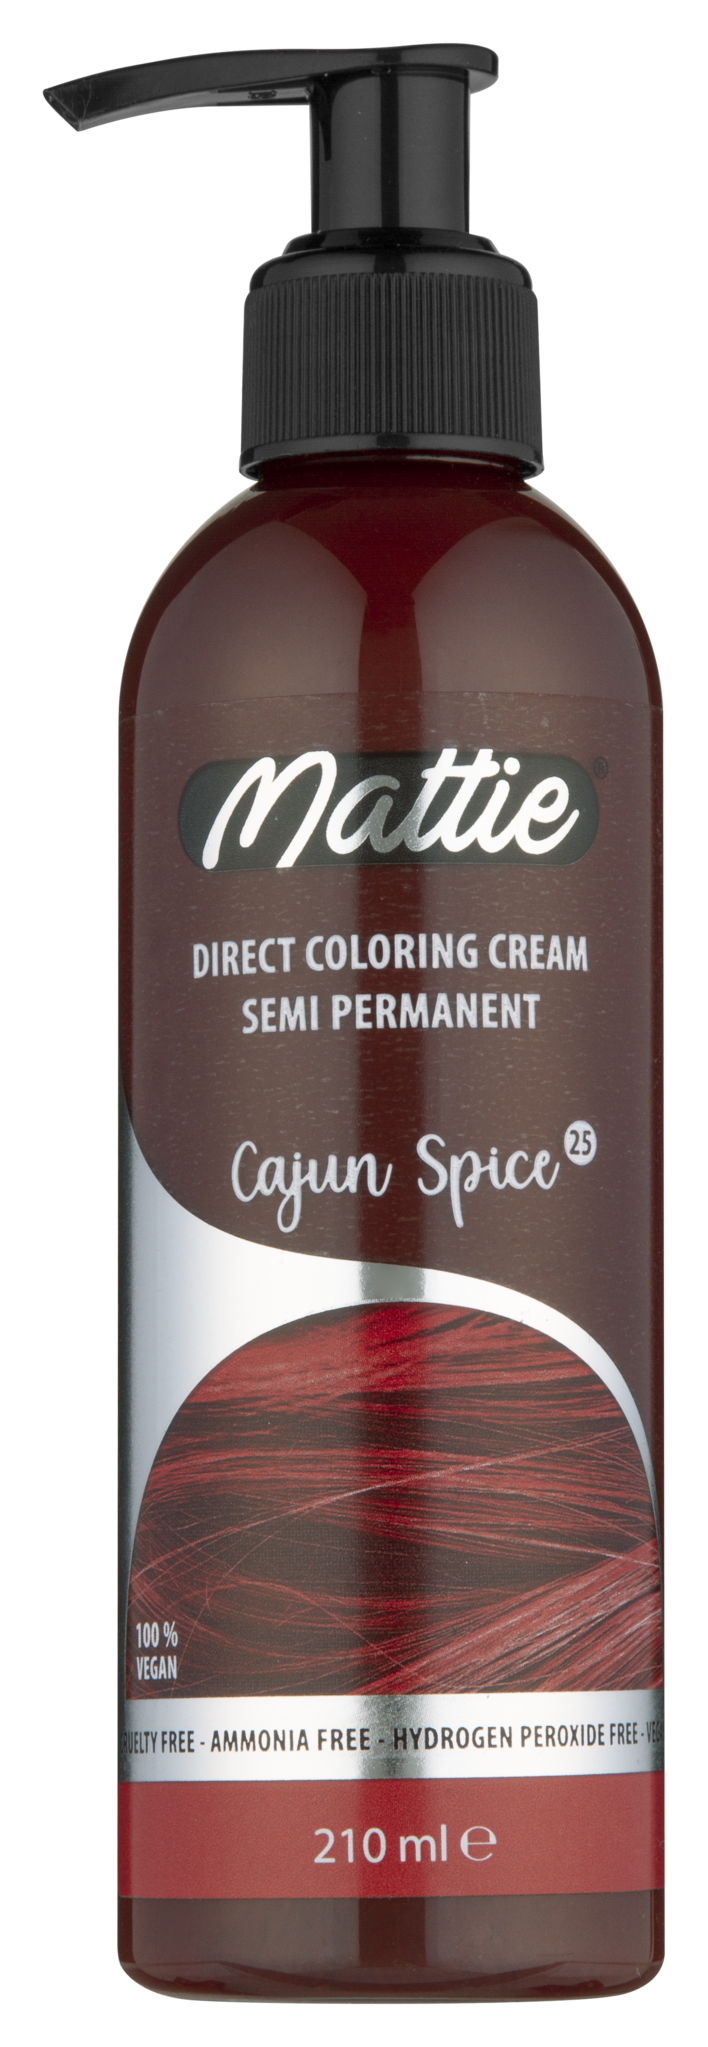 Mattie Direct Coloring Cream Semi-Permanent - Cajun Spice 210ml